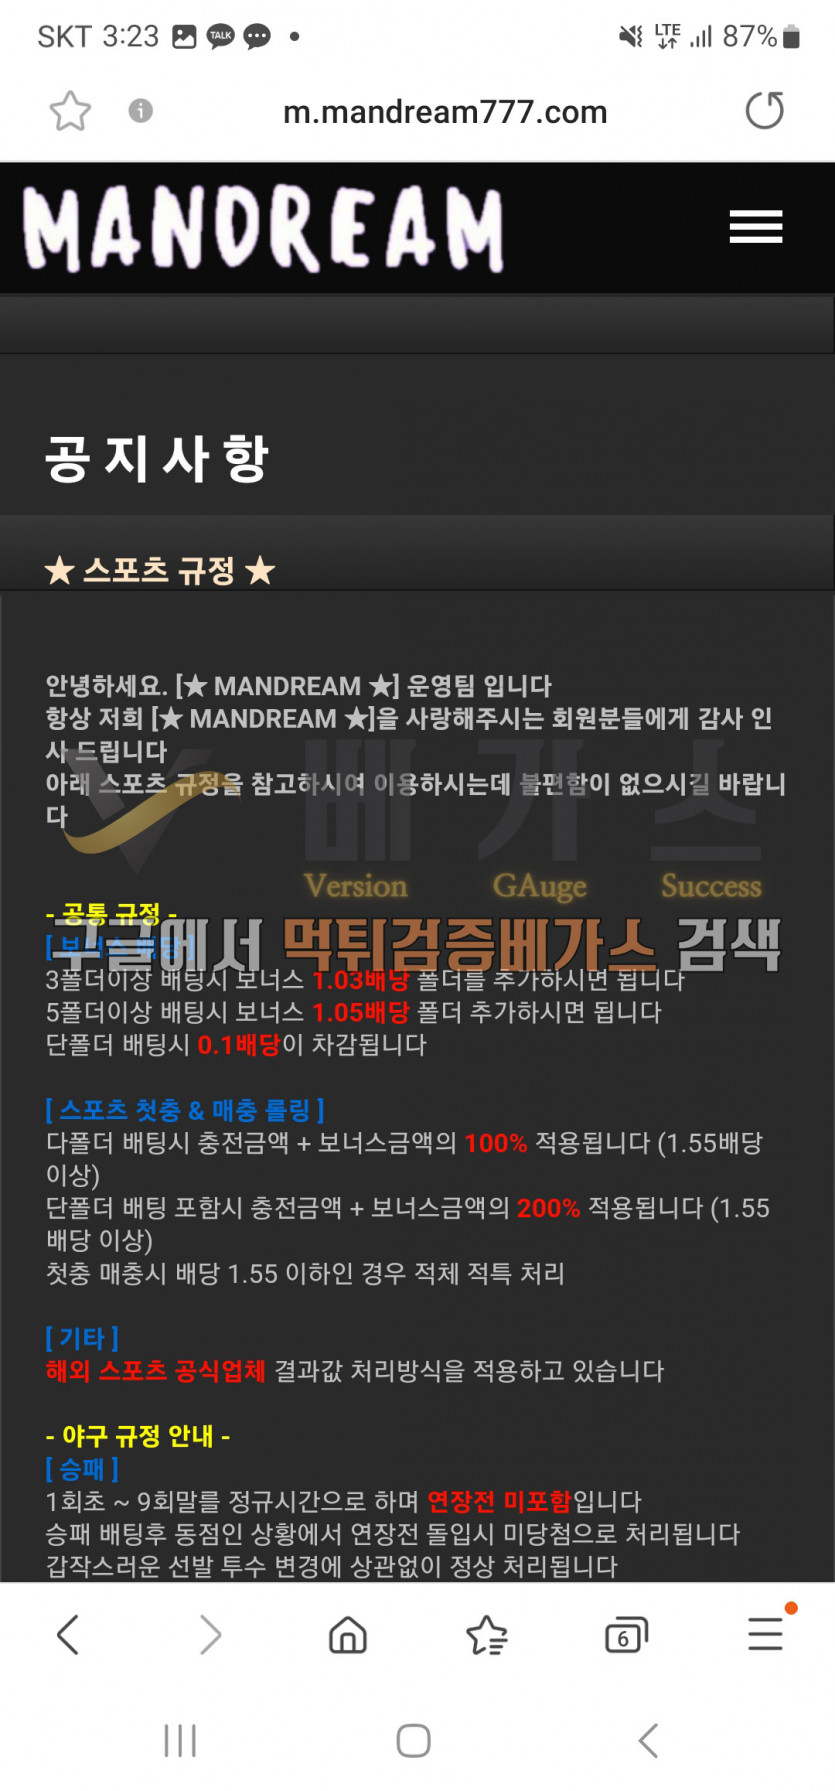 먹튀검증 완료 먹튀사이트-만드림[mandream777.com] 스포츠 규정 먹튀검증 증거자료4